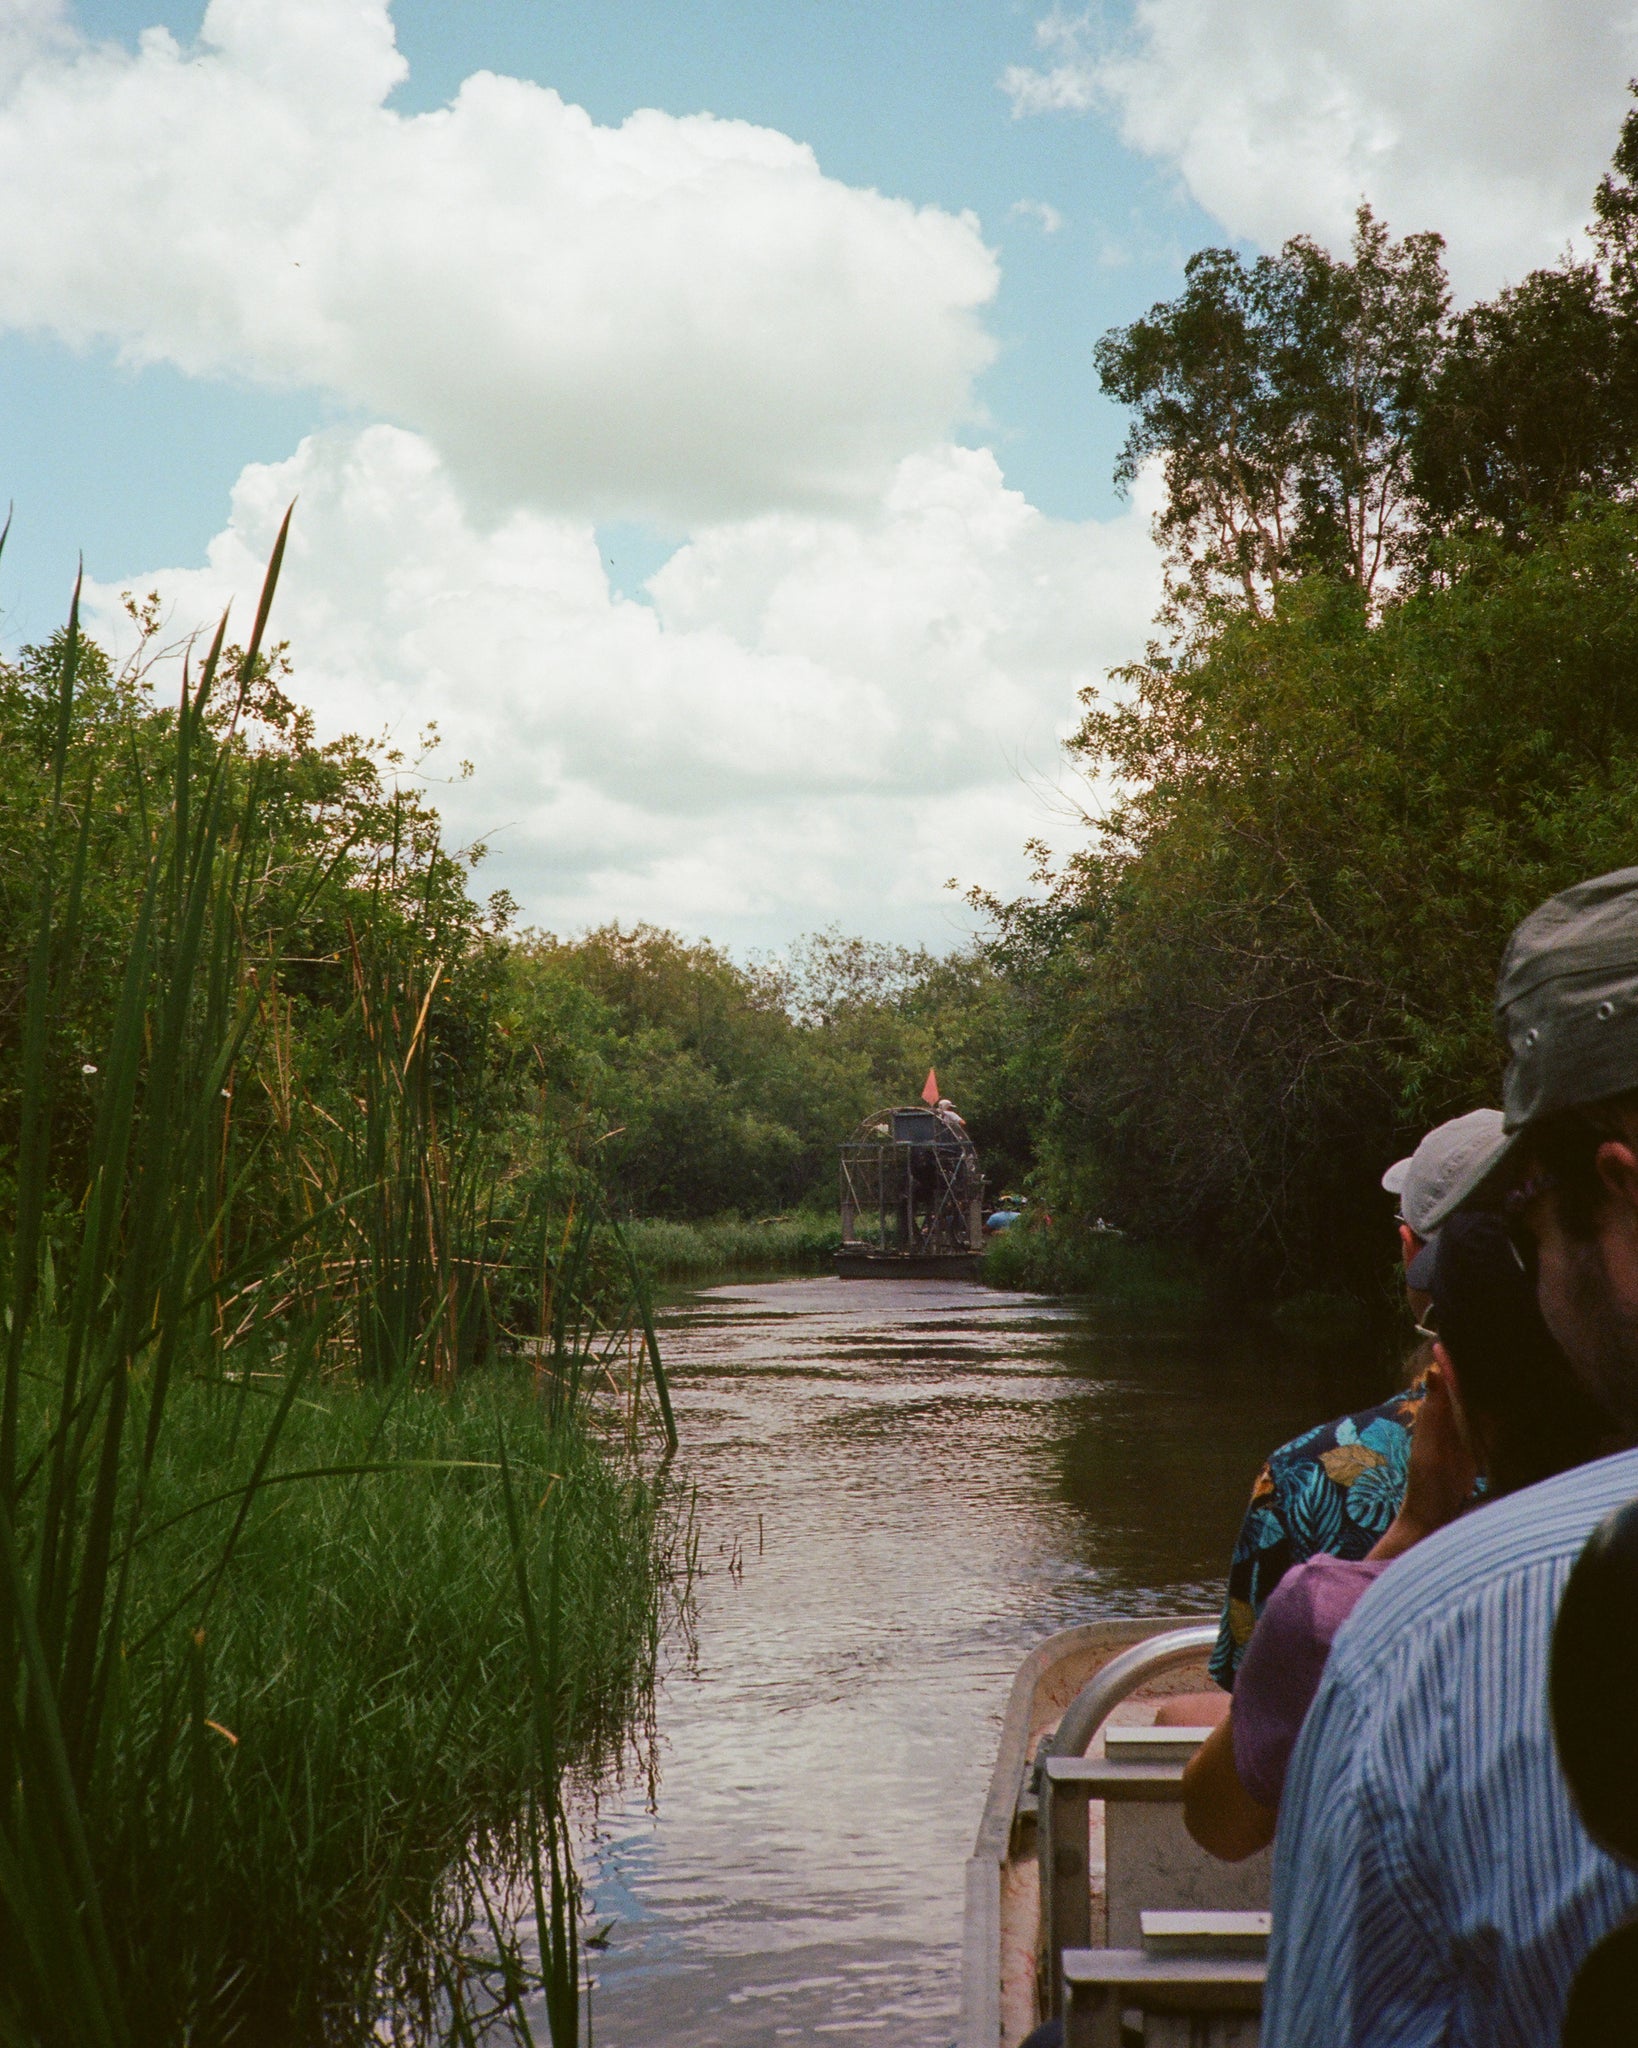 "Vro vs. Glades": A Trip Through the Florida Everglades